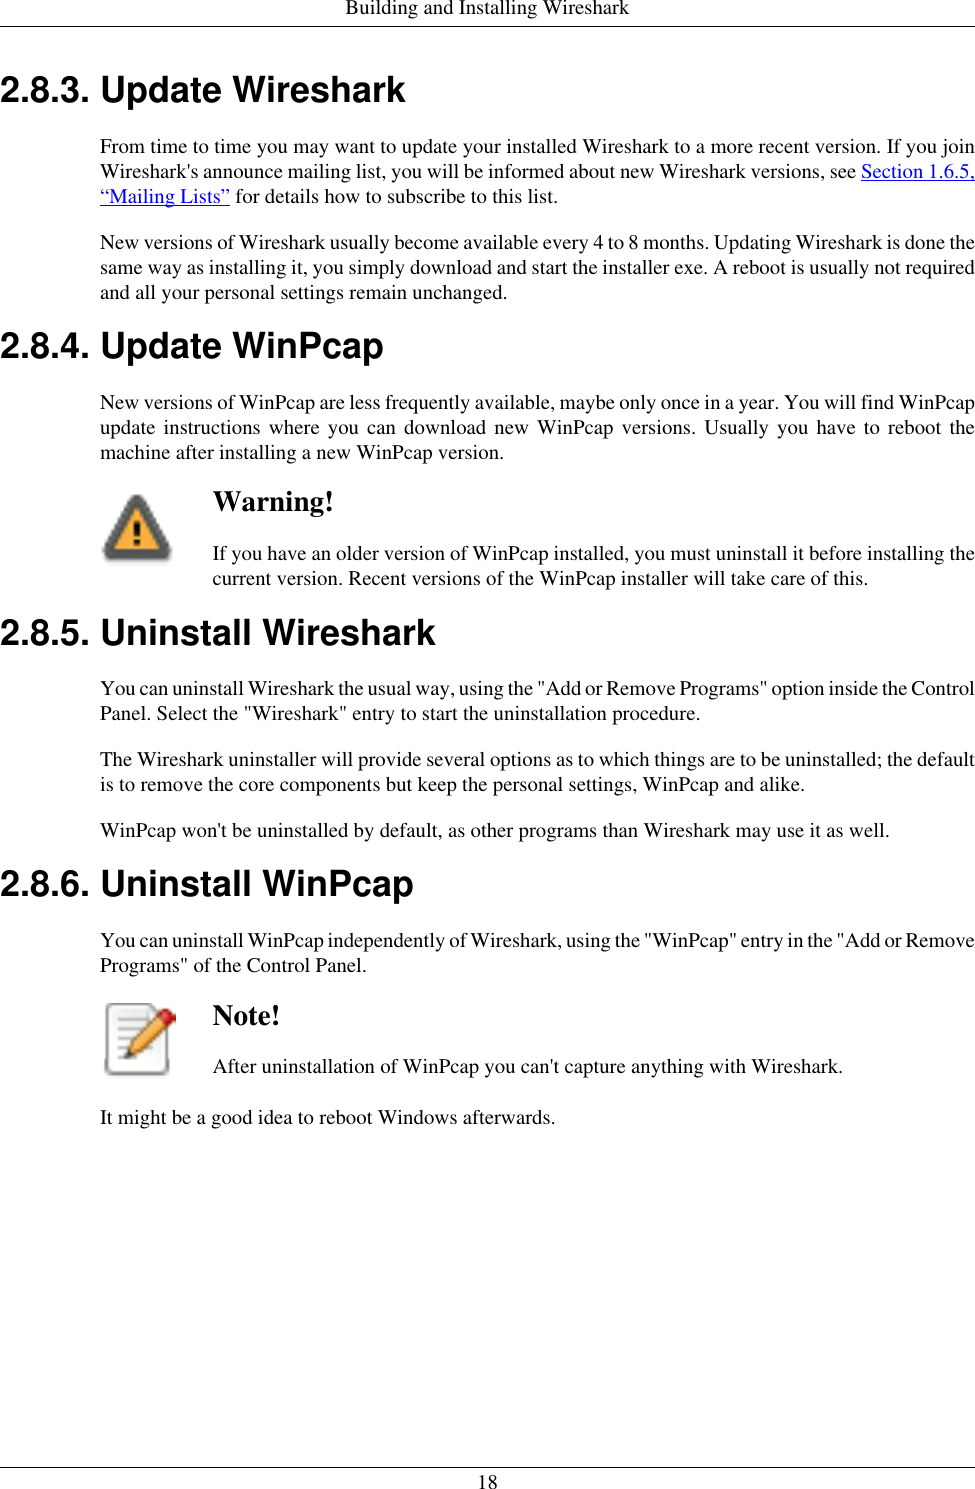 uninstall winpcap windows 10